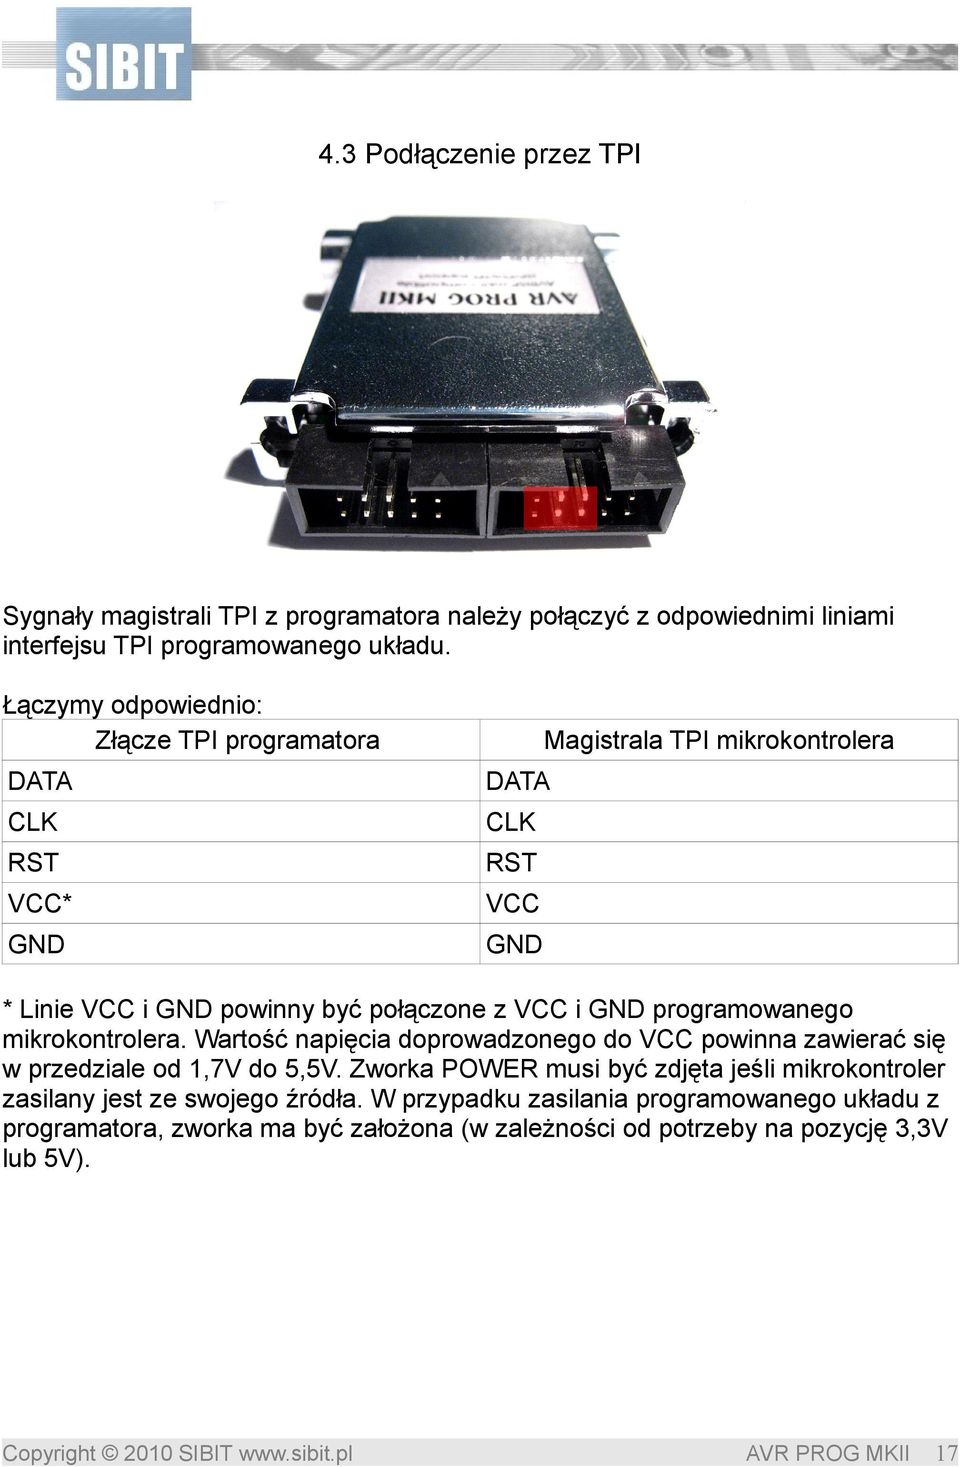 VCC i GND programowanego mikrokontrolera. Wartość napięcia doprowadzonego do VCC powinna zawierać się w przedziale od 1,7V do 5,5V.